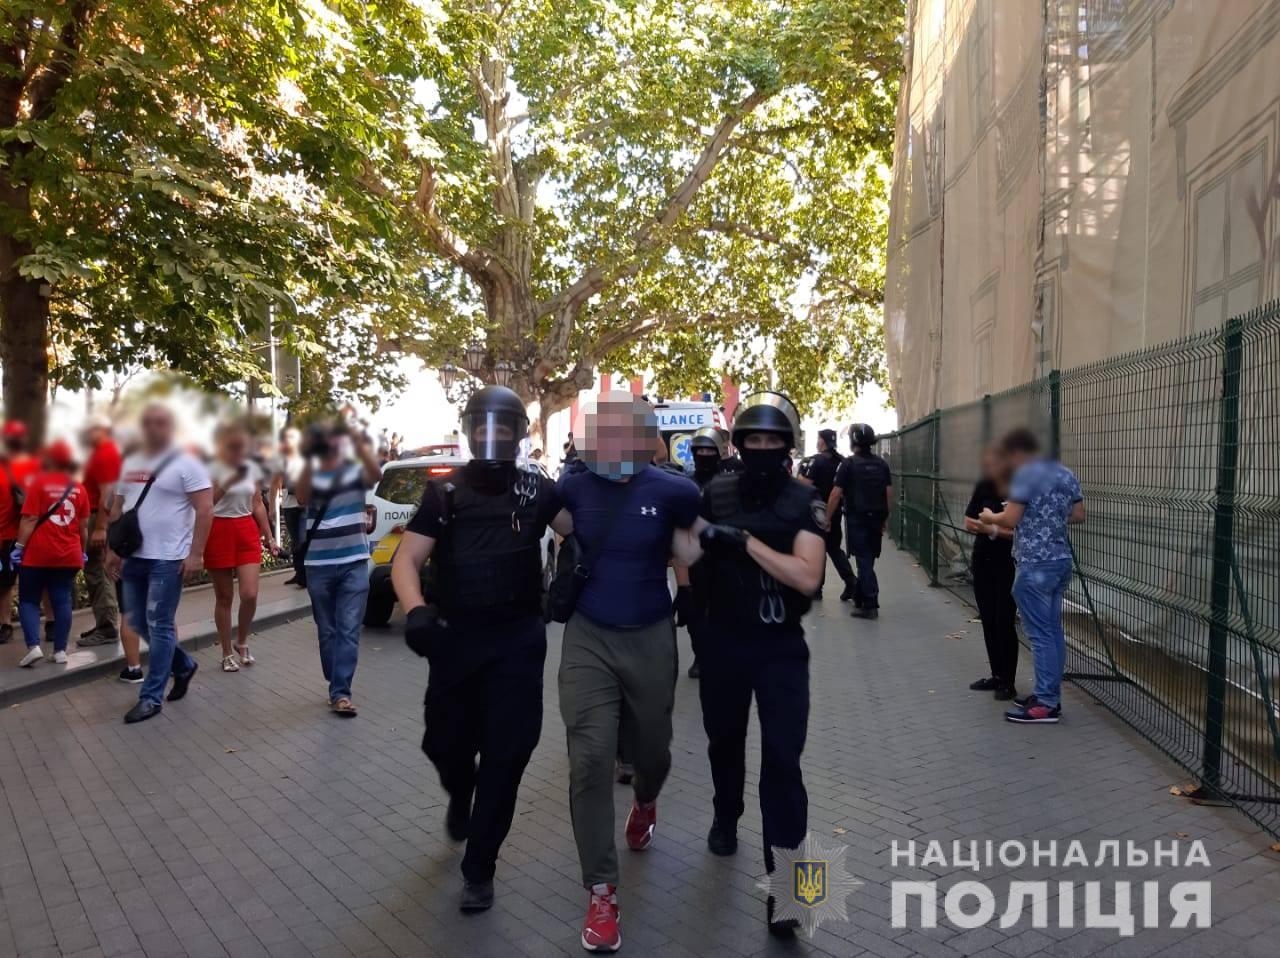 Что произошло между полицией и радикалами в Одессе. Фото: Нацполиция